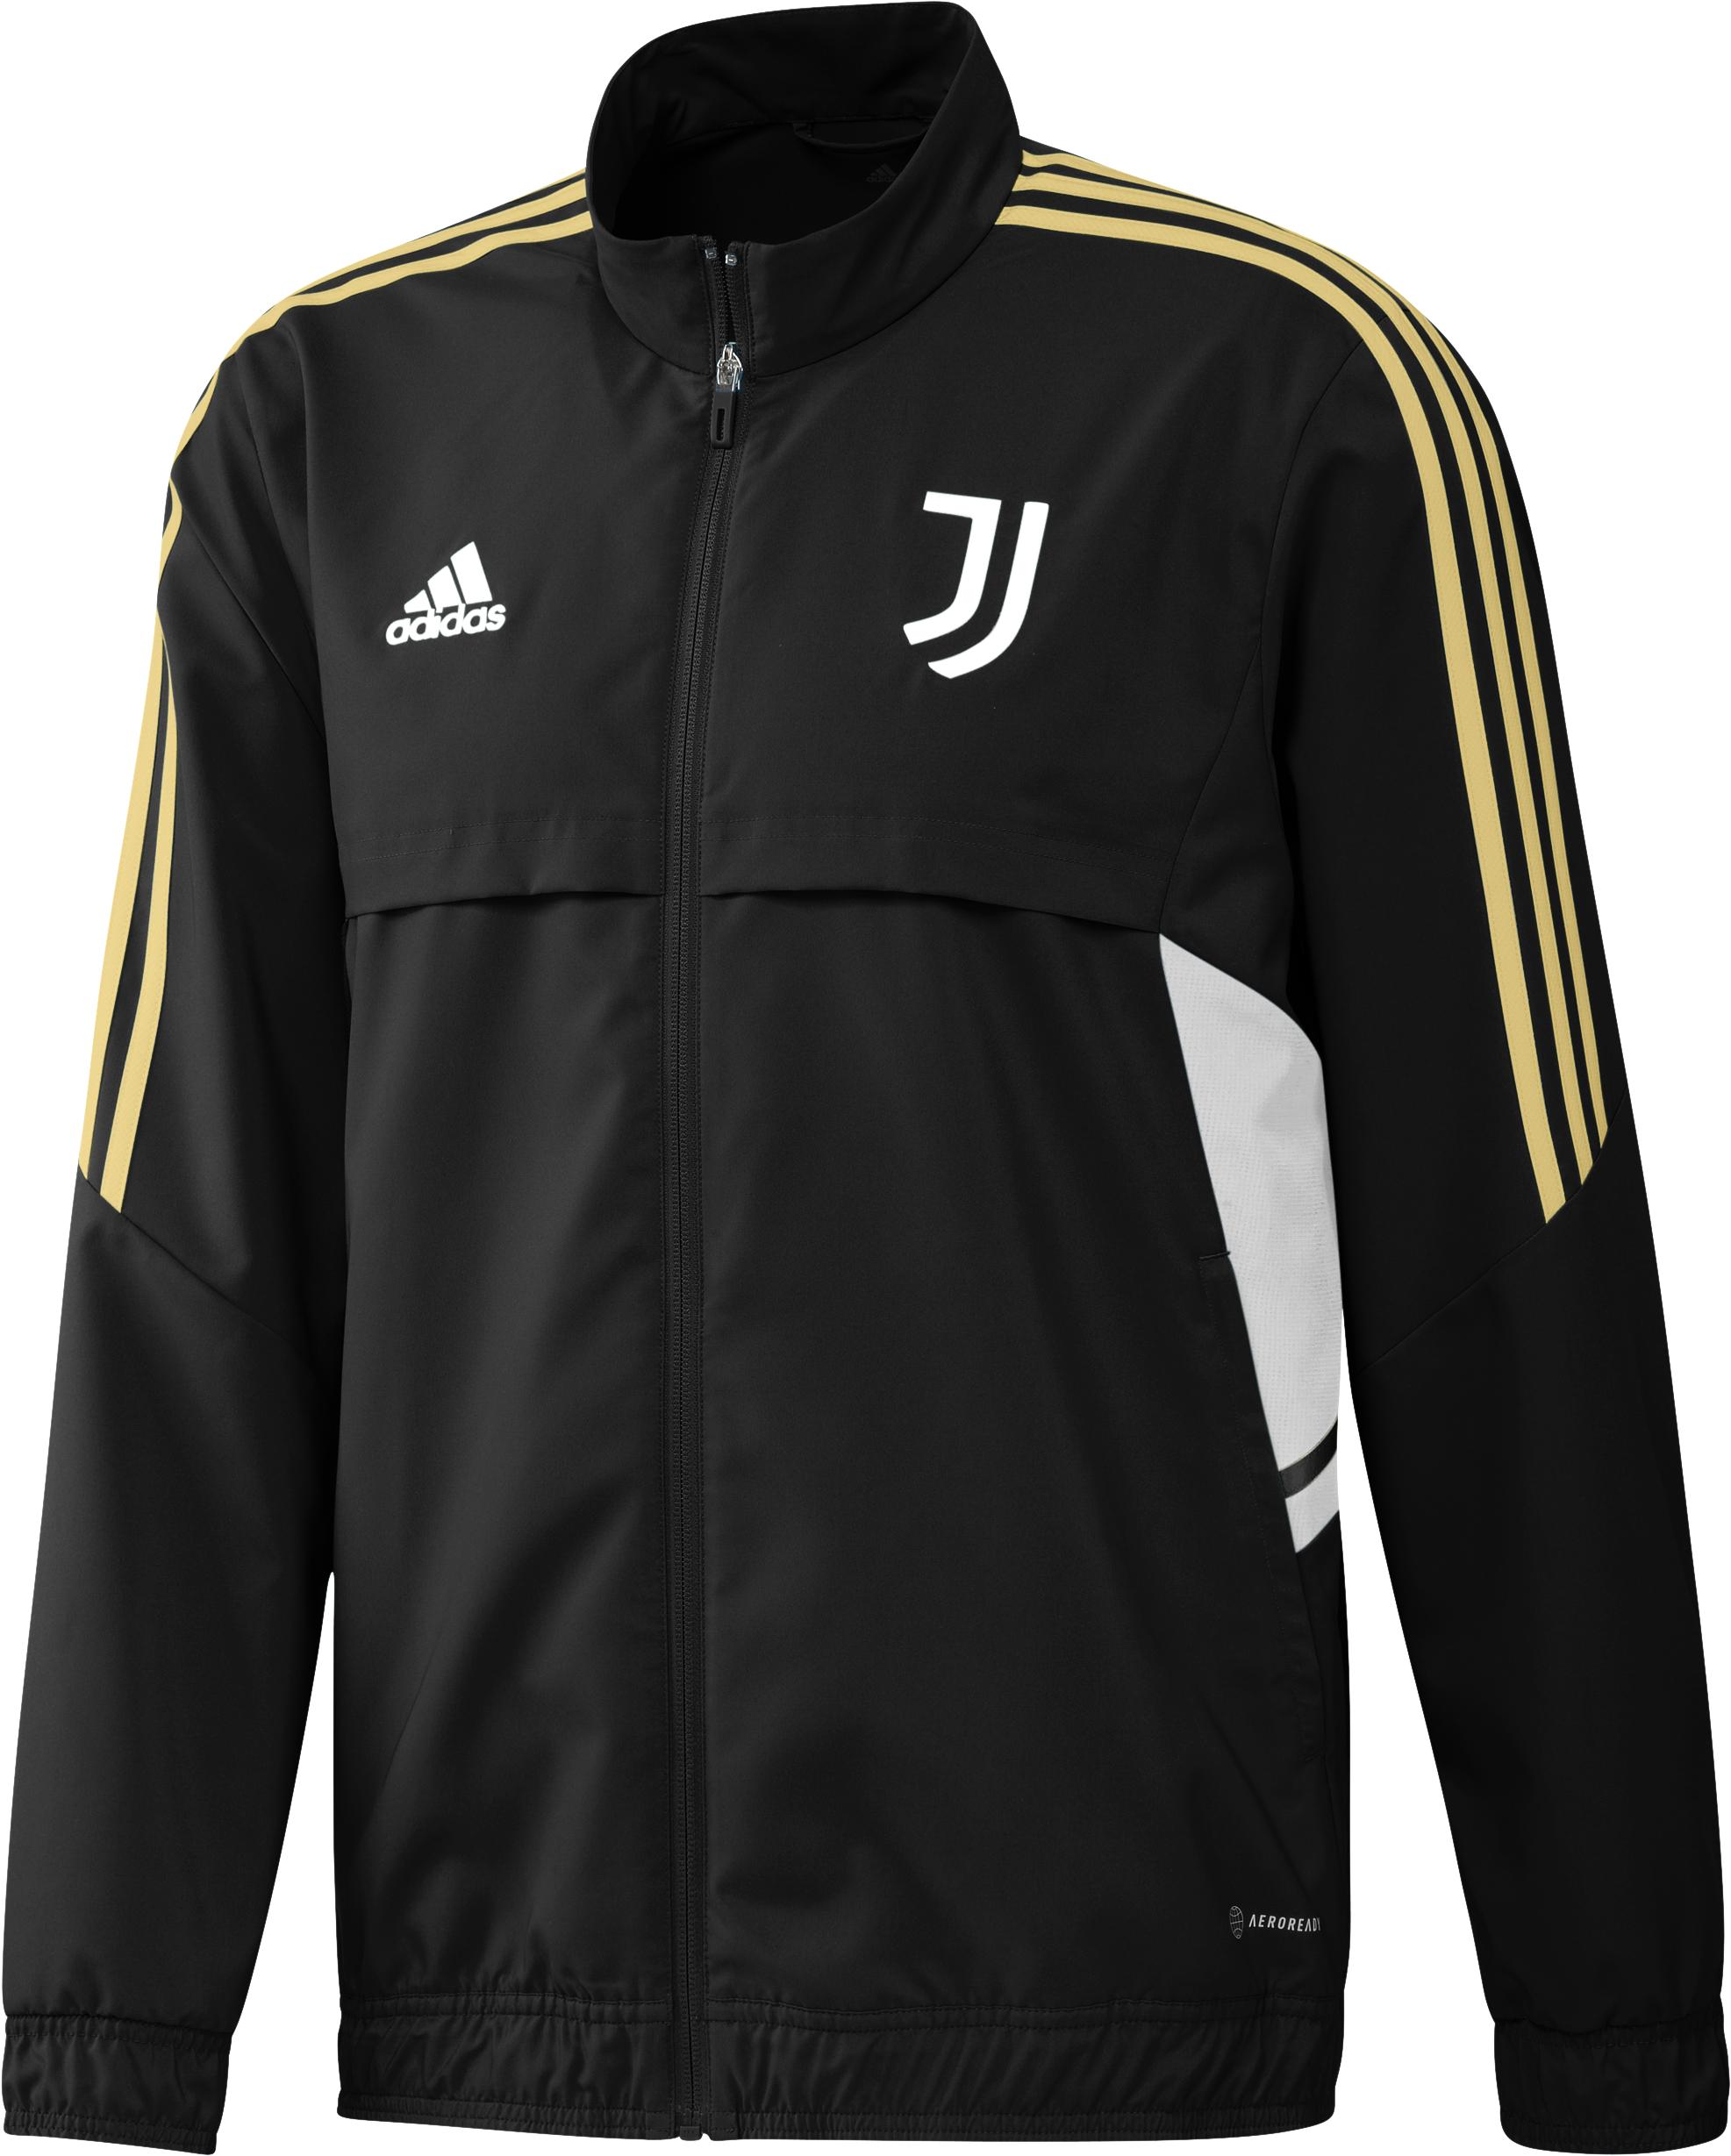 Adidas Sweatshirt Icons Juventus